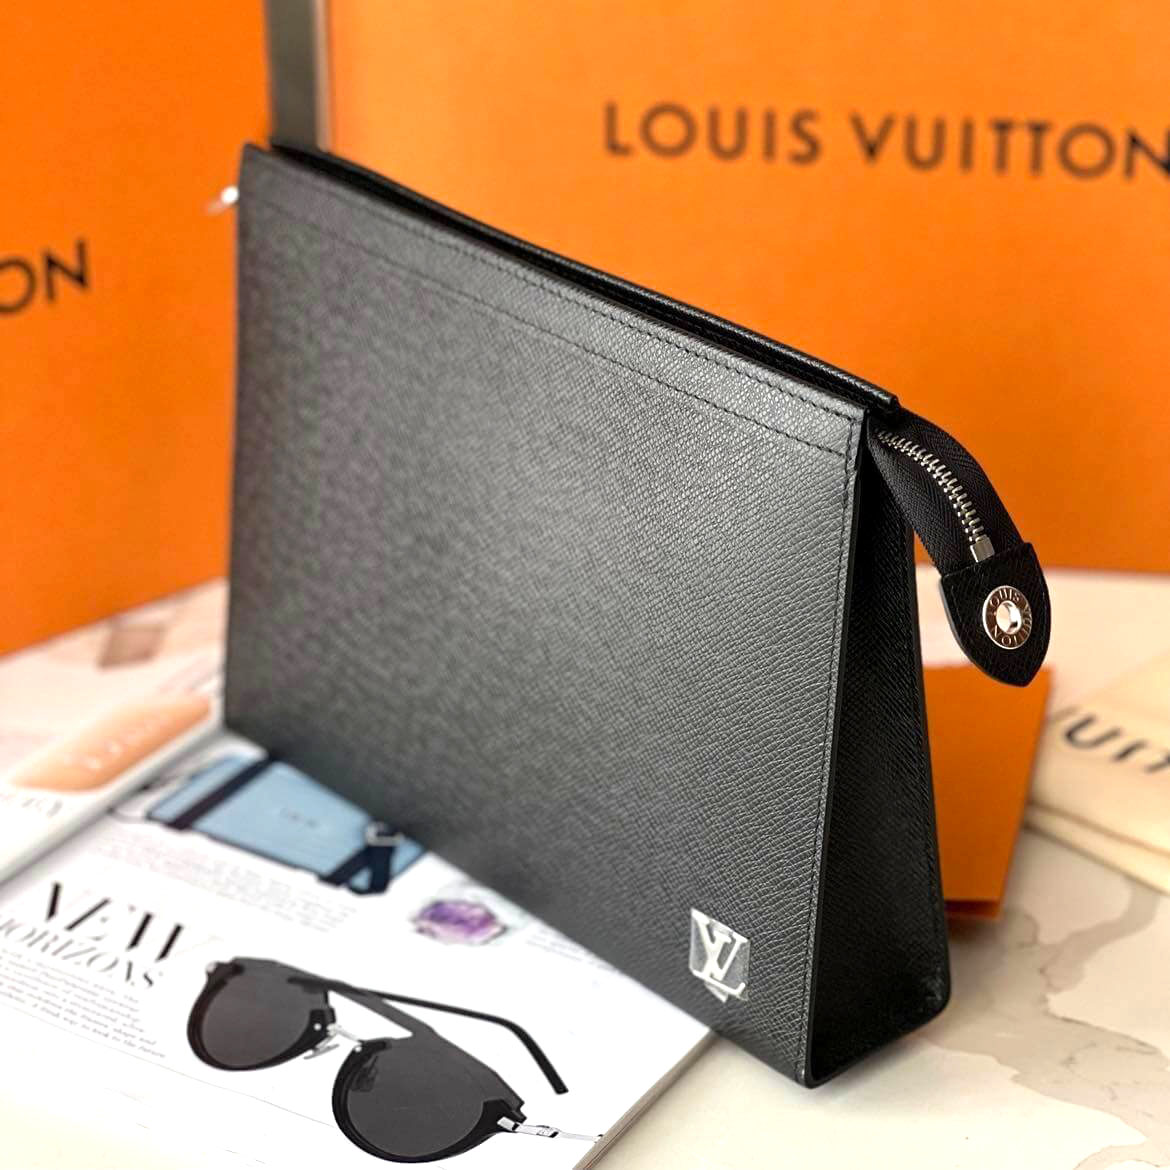 Louis Vuitton Clutch Câm Tay Pochette Voyage Màu Đen Size 27 M30450 xách tay  chính hãng giá rẻ bảo hành dài - Túi xách - Ví da - Genmaz